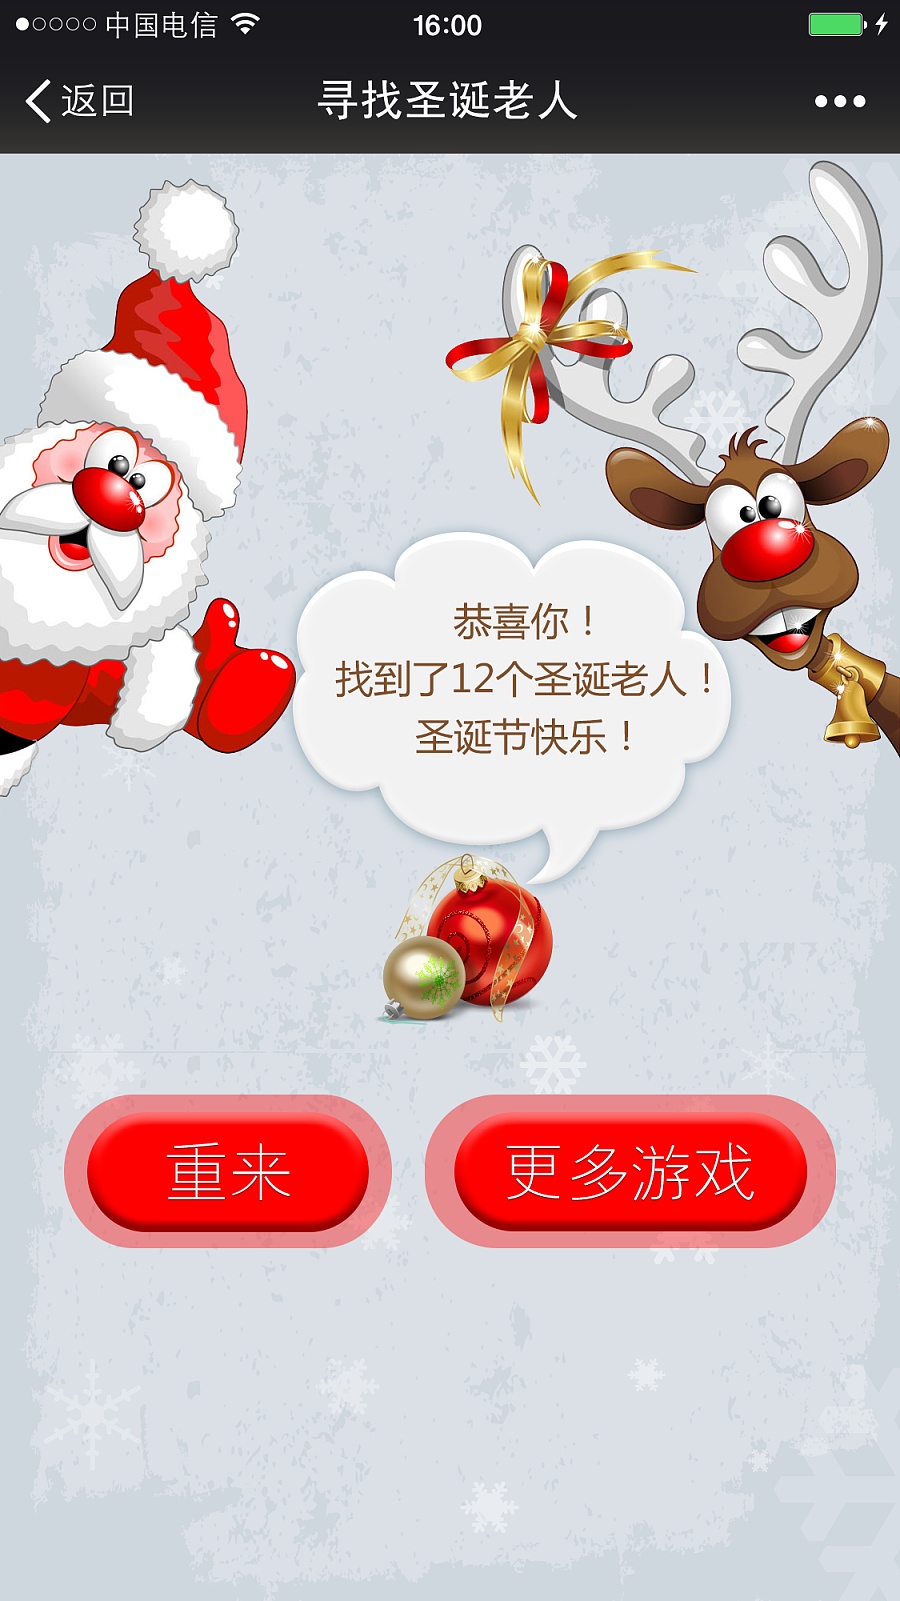 圣诞节微信小游戏 寻找圣诞老人 微商聚 微信营